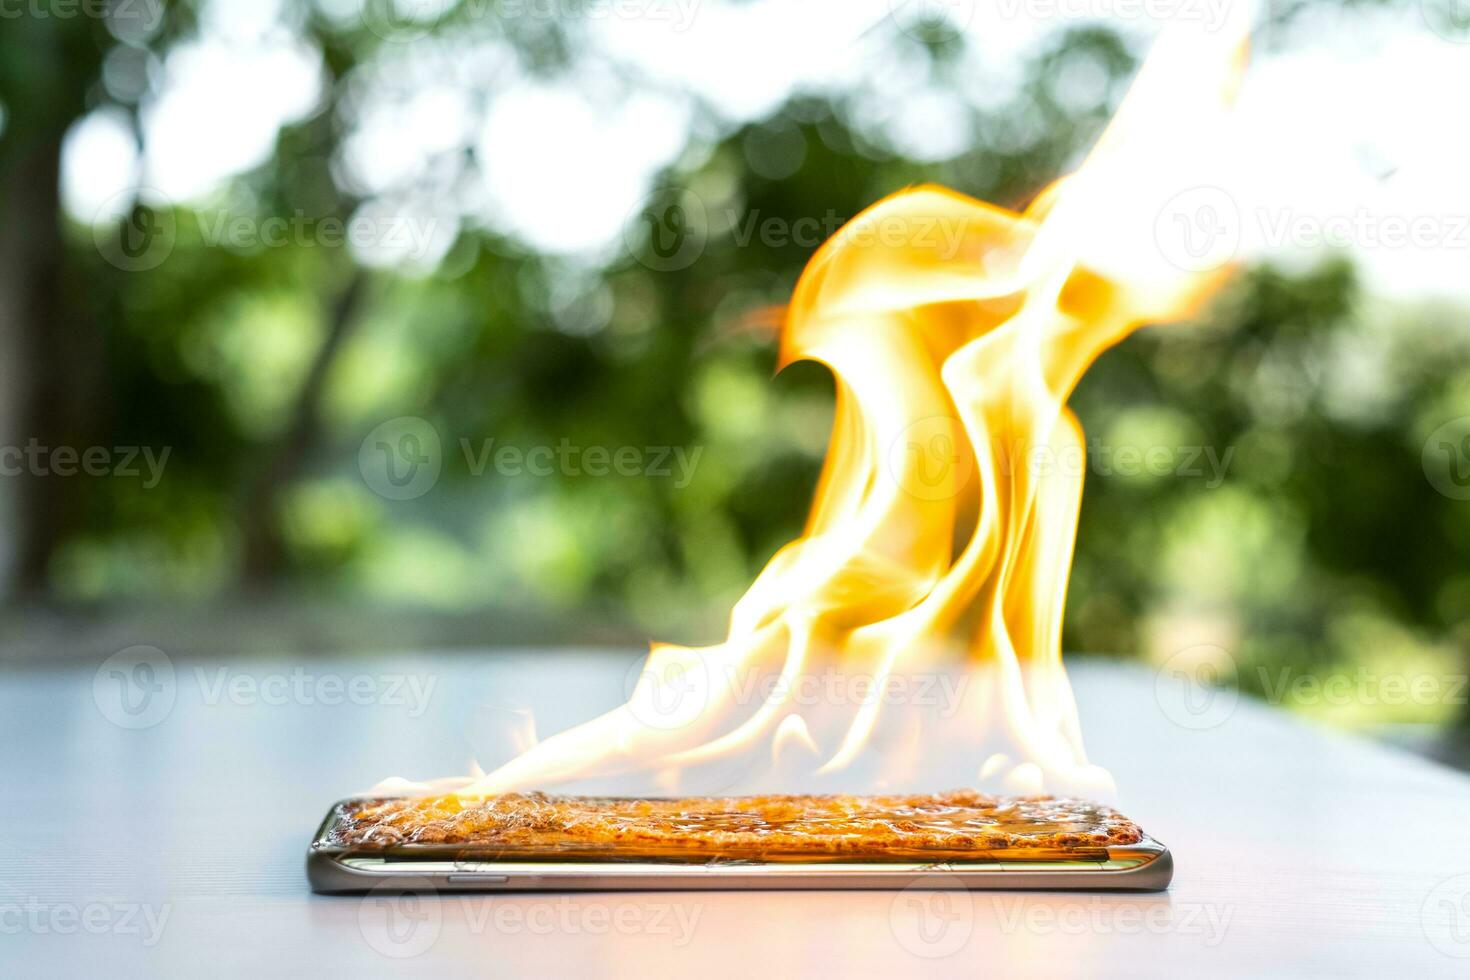 a tela do smartphone está rachada e pegando fogo com um fundo desfocado foto